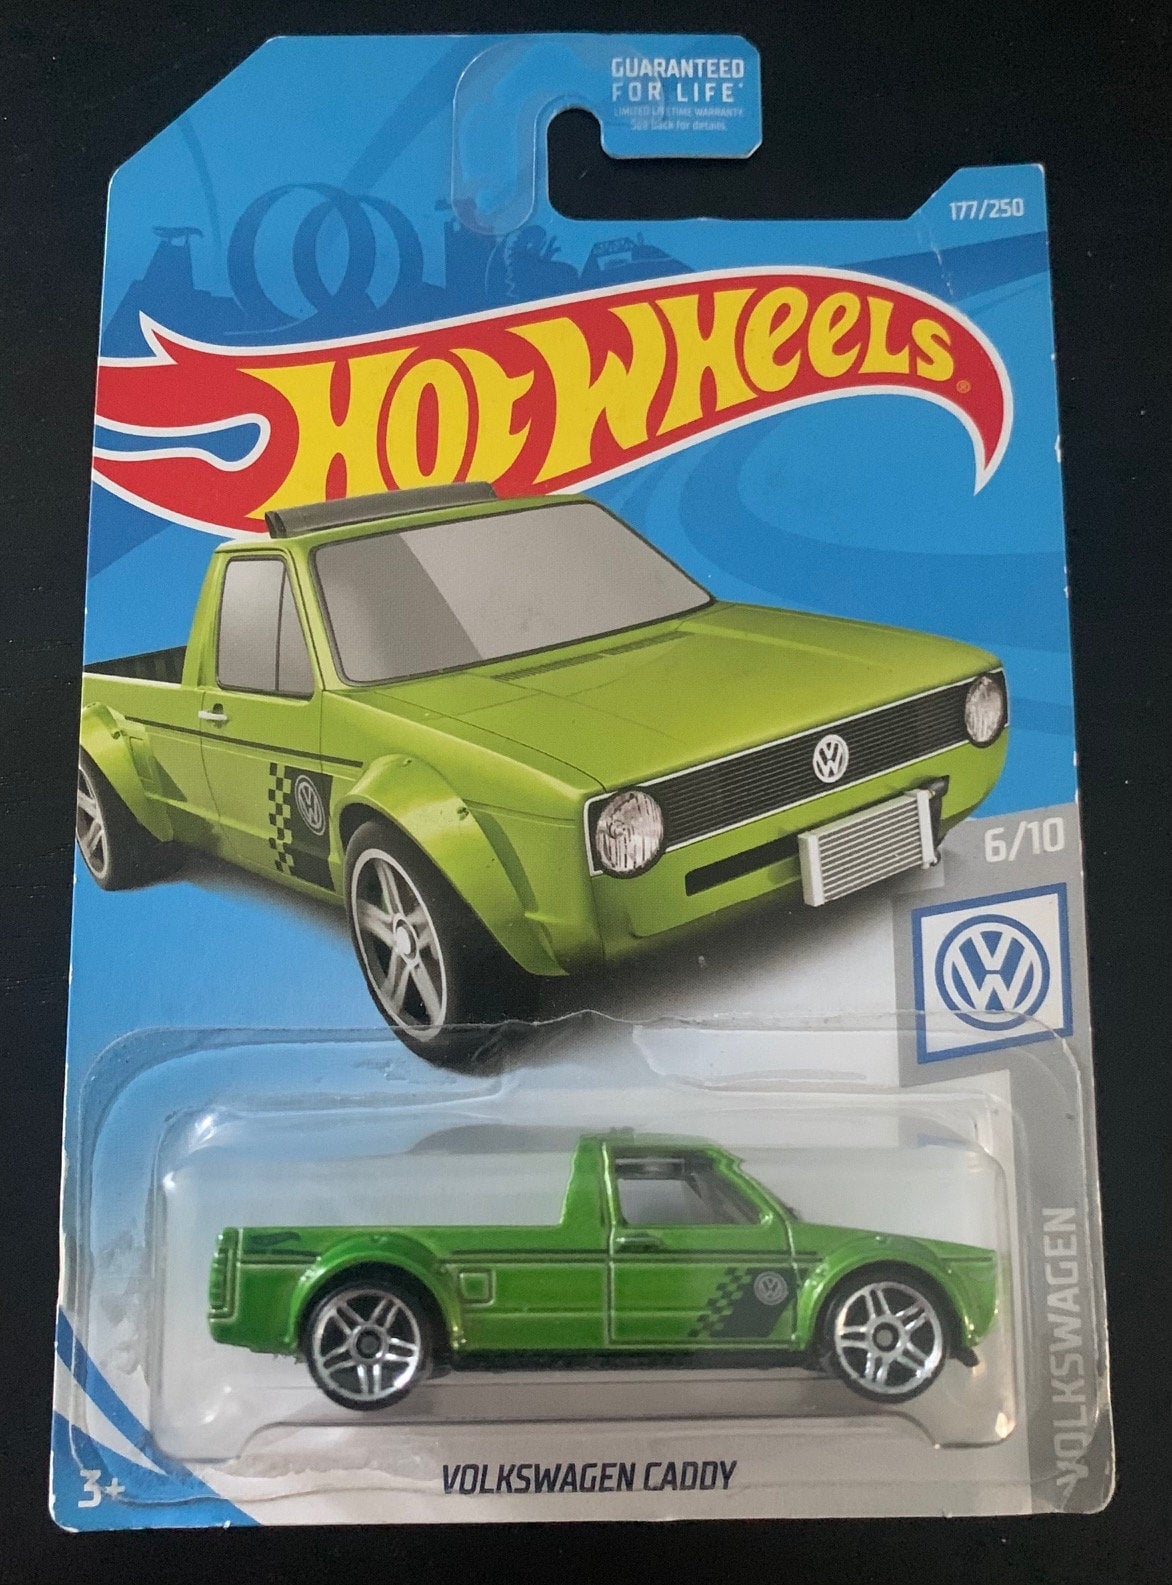  Hot Wheels Volkswagen Series 6/10 Volkswagen Caddy 177/250,  Green : Toys & Games